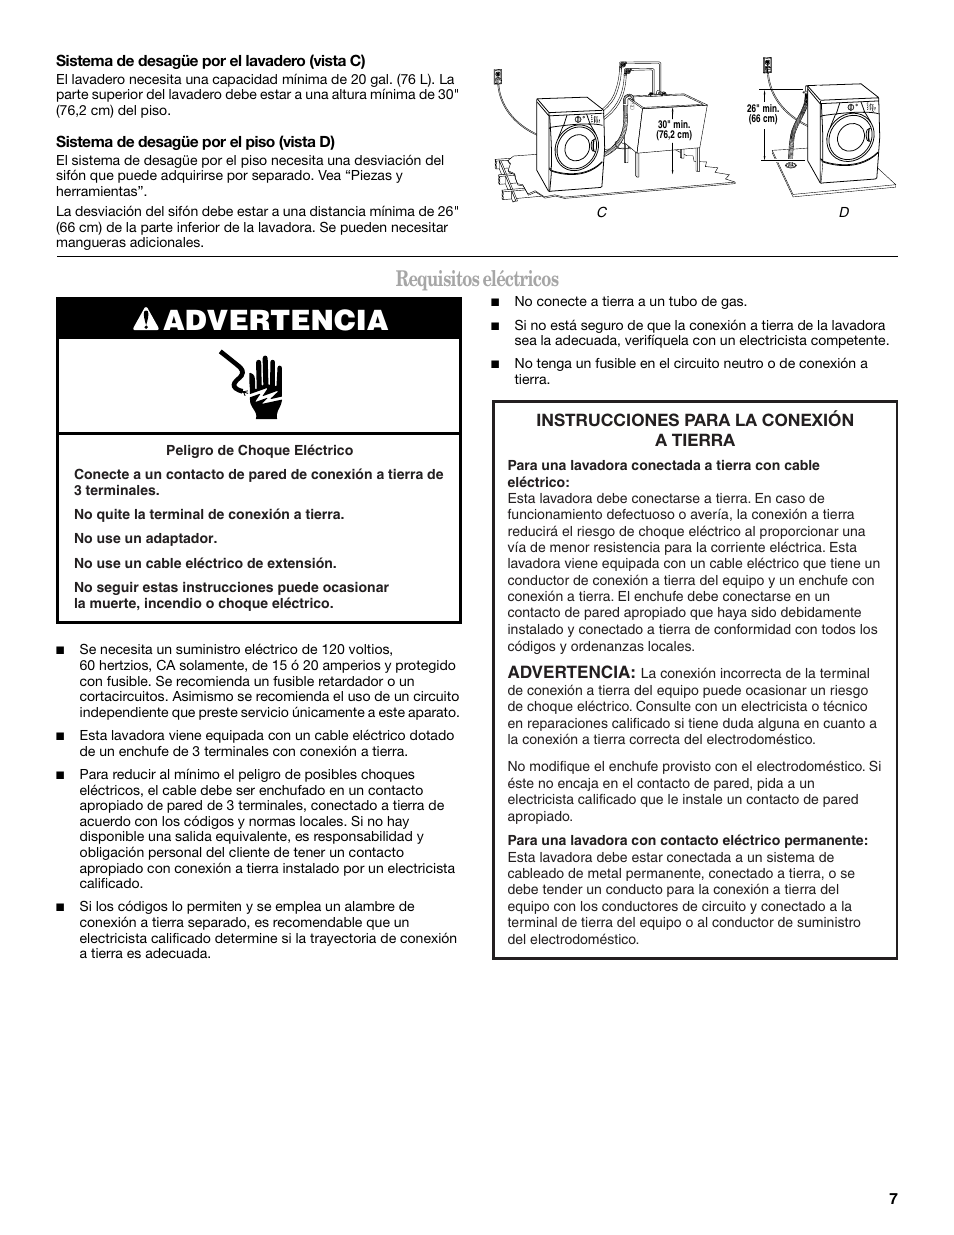 Advertencia, Requisitos eléctricos | Whirlpool WFC7500VW Manual del usuario | Página 7 / 26